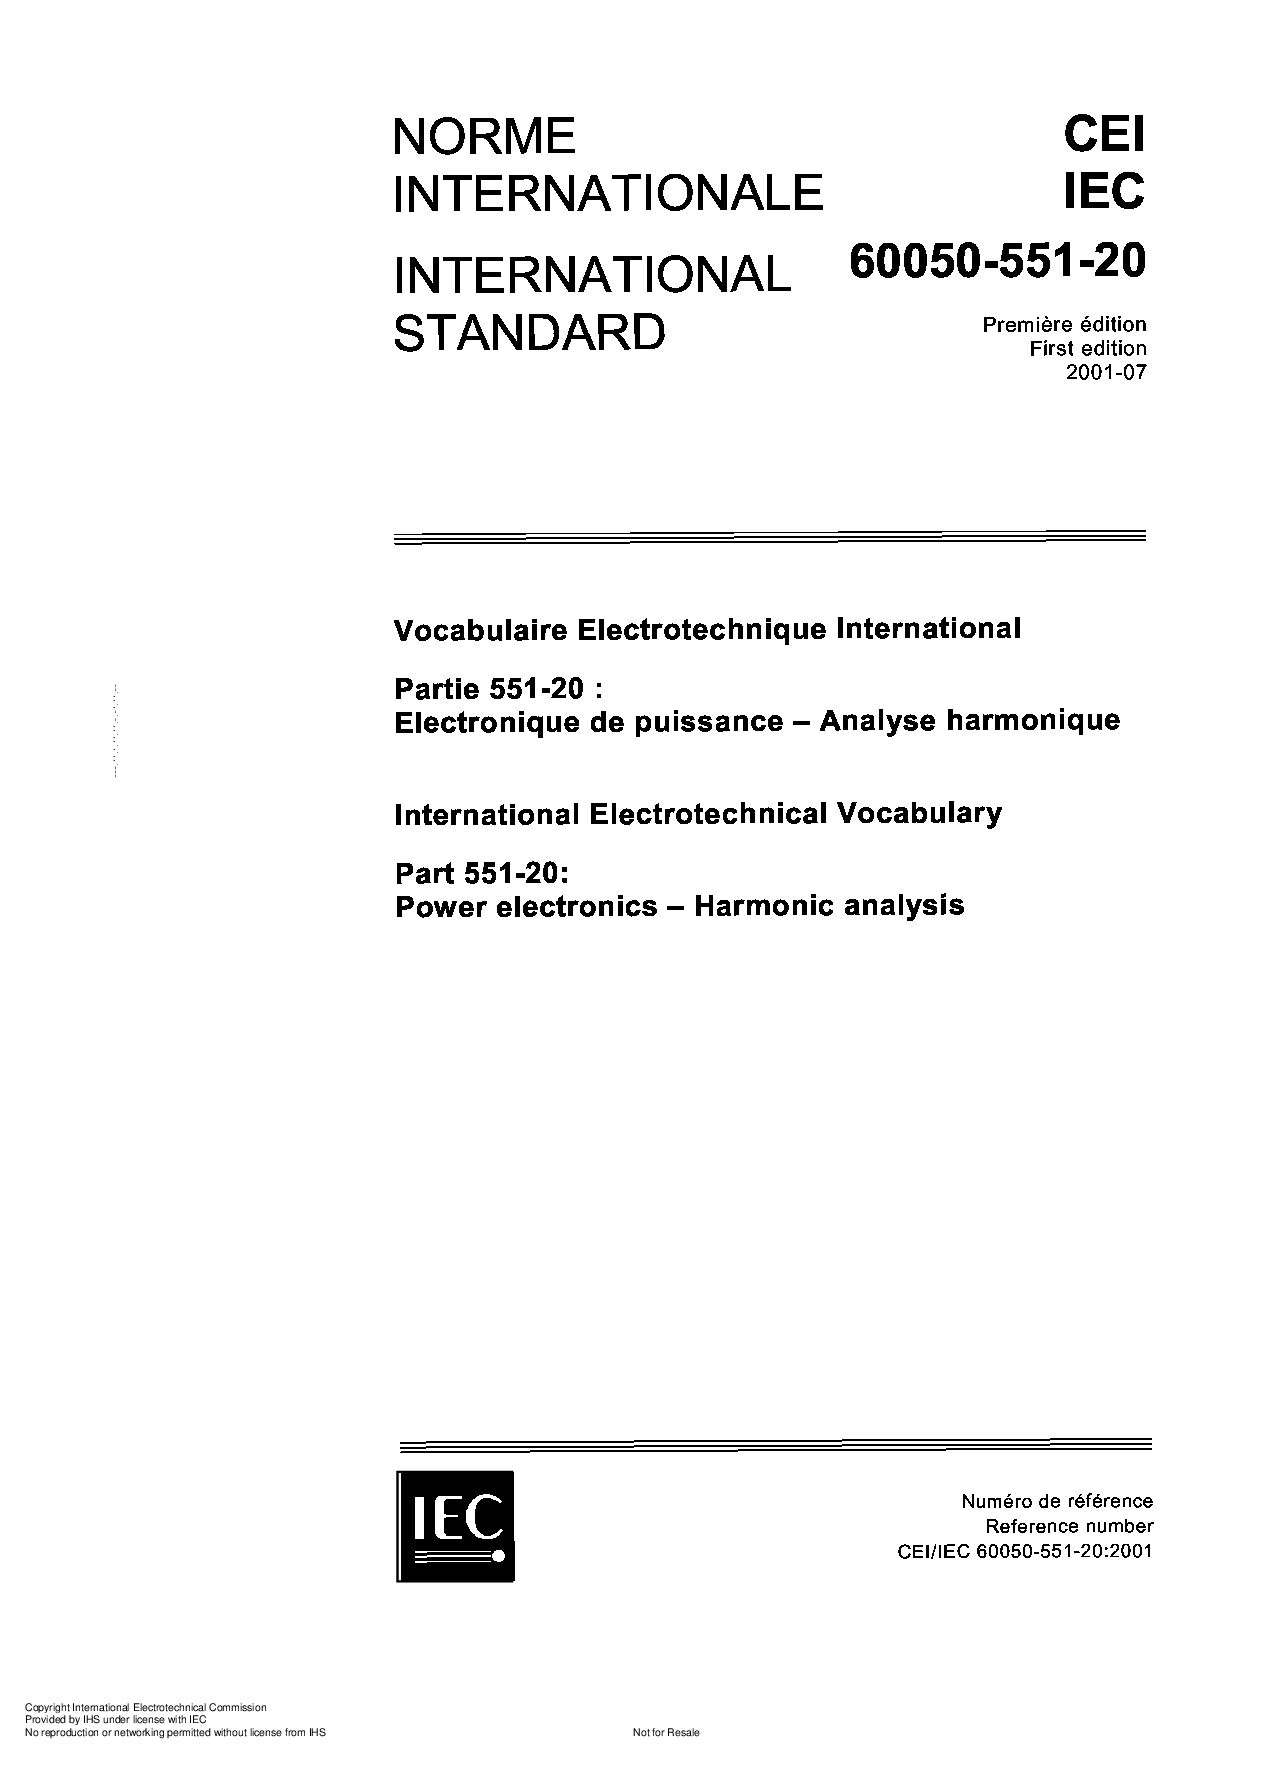 IEC 60050-551-20-2001